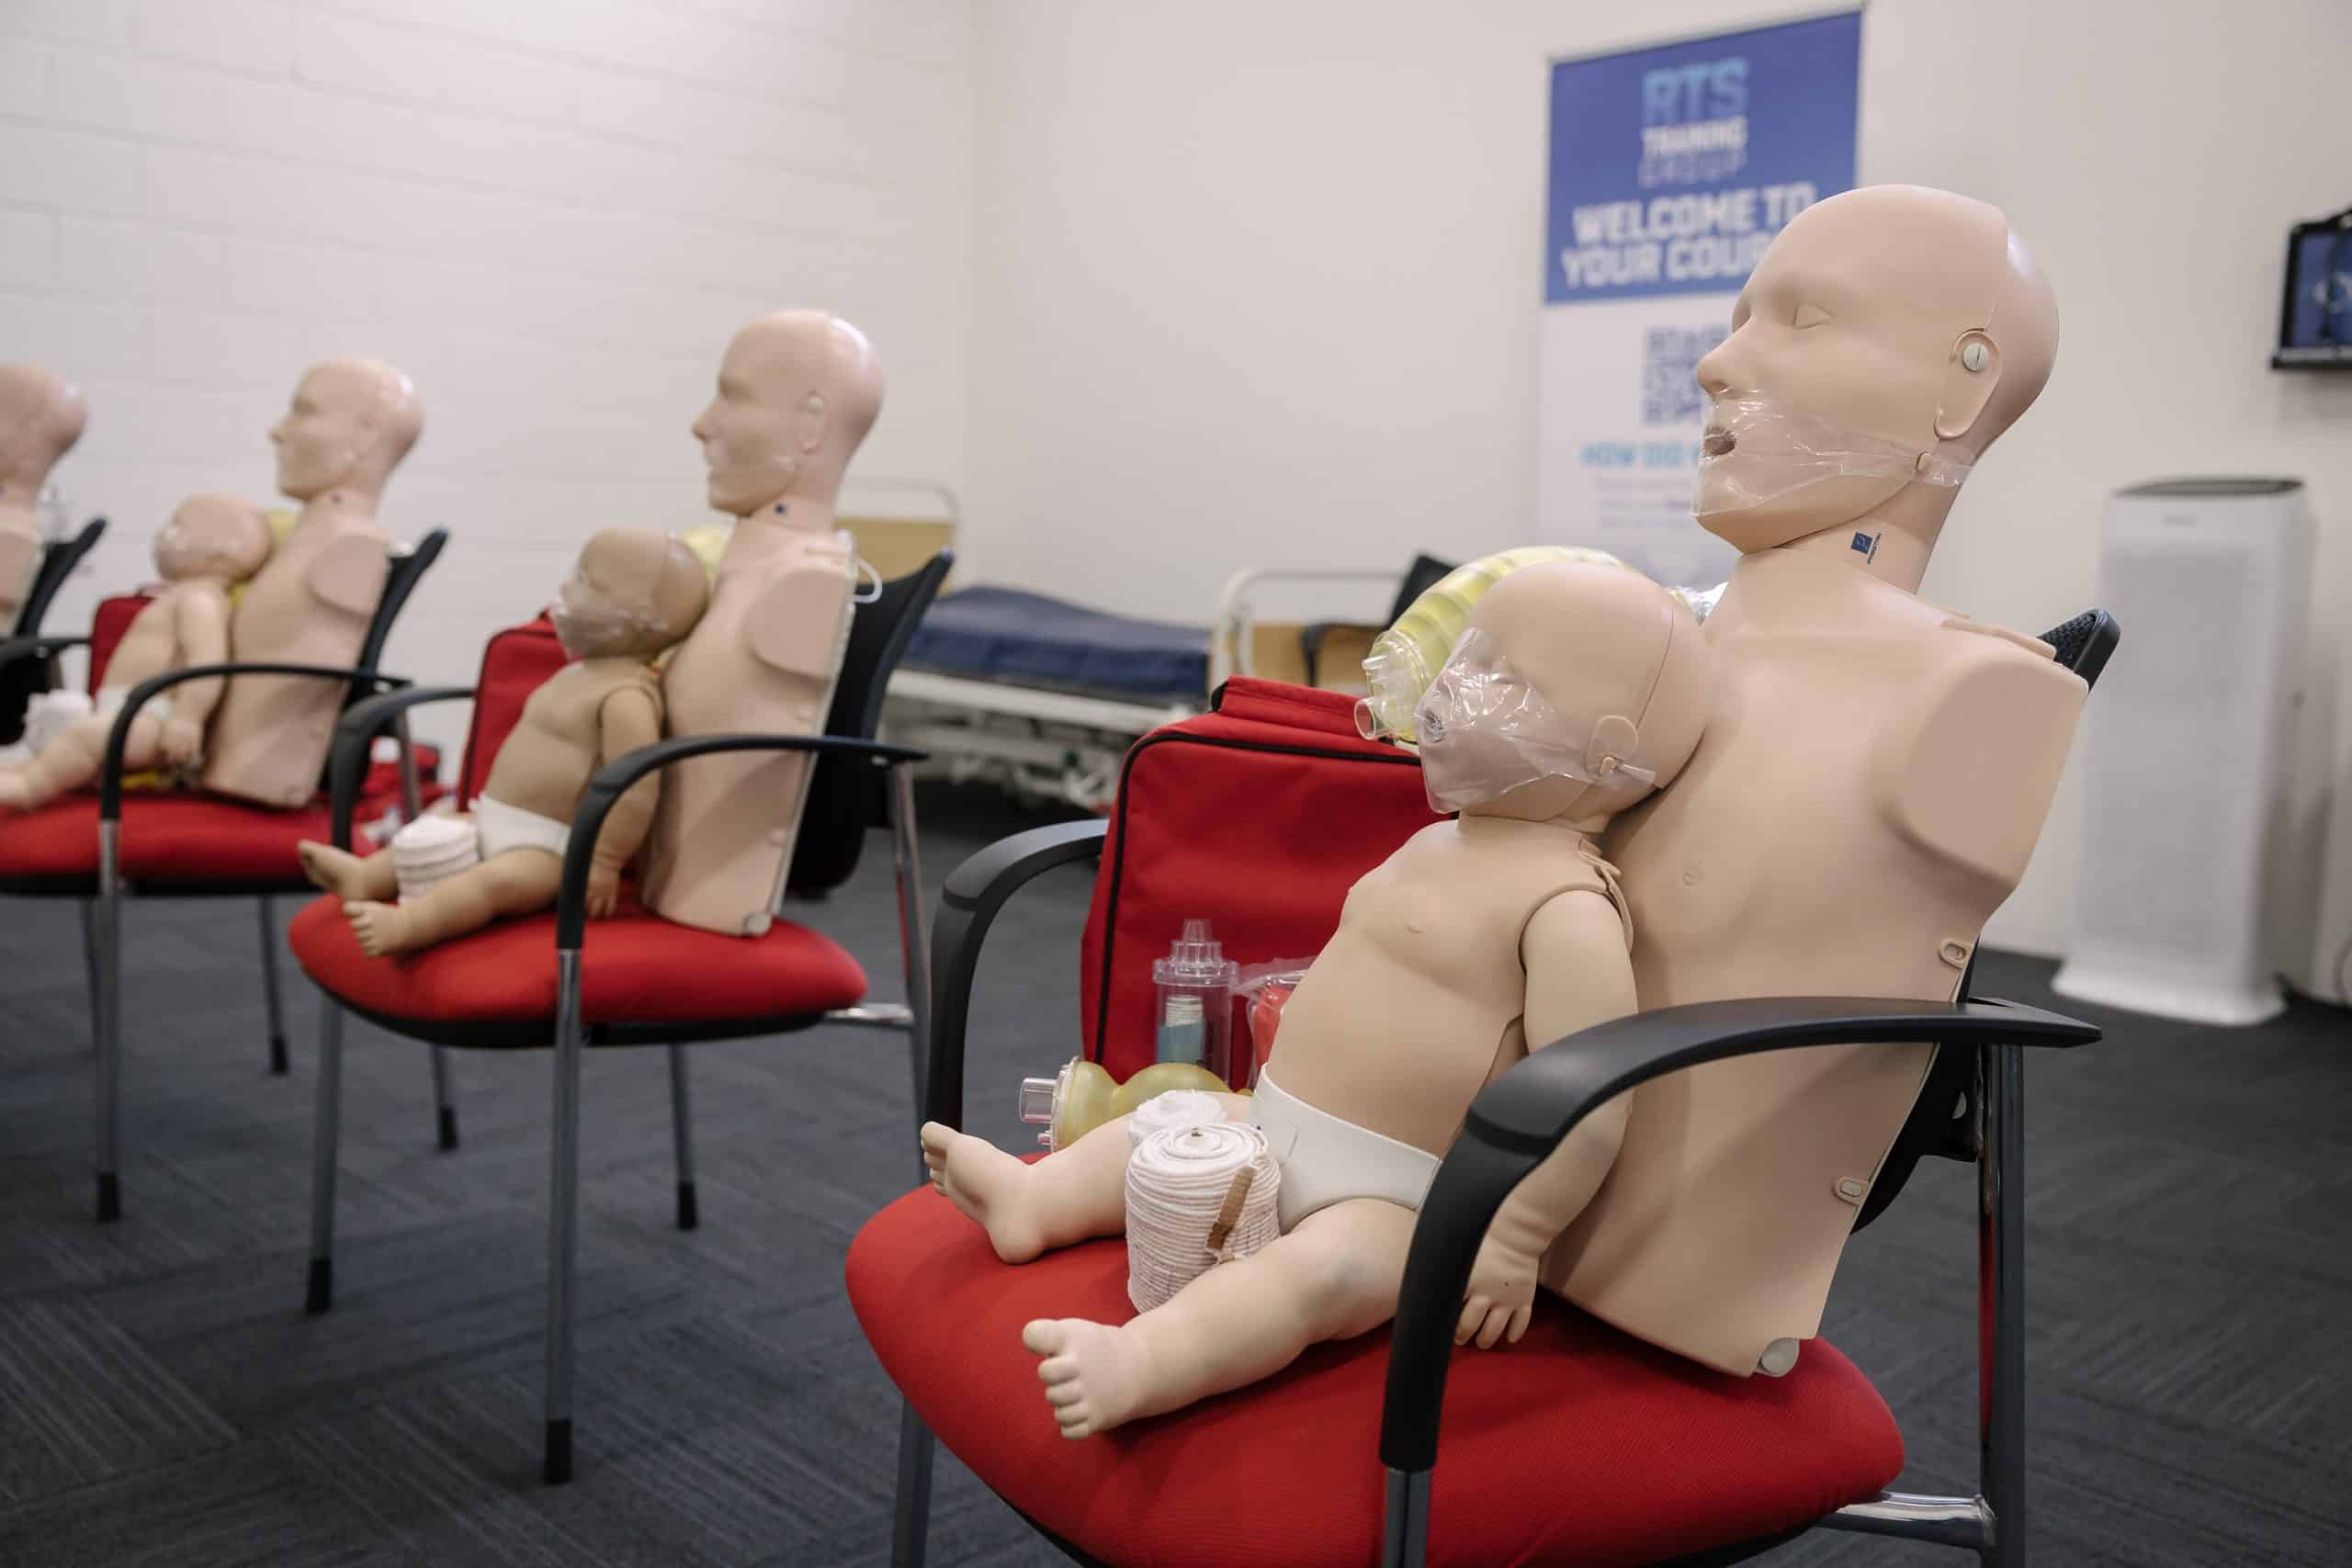 first aid training scenarios